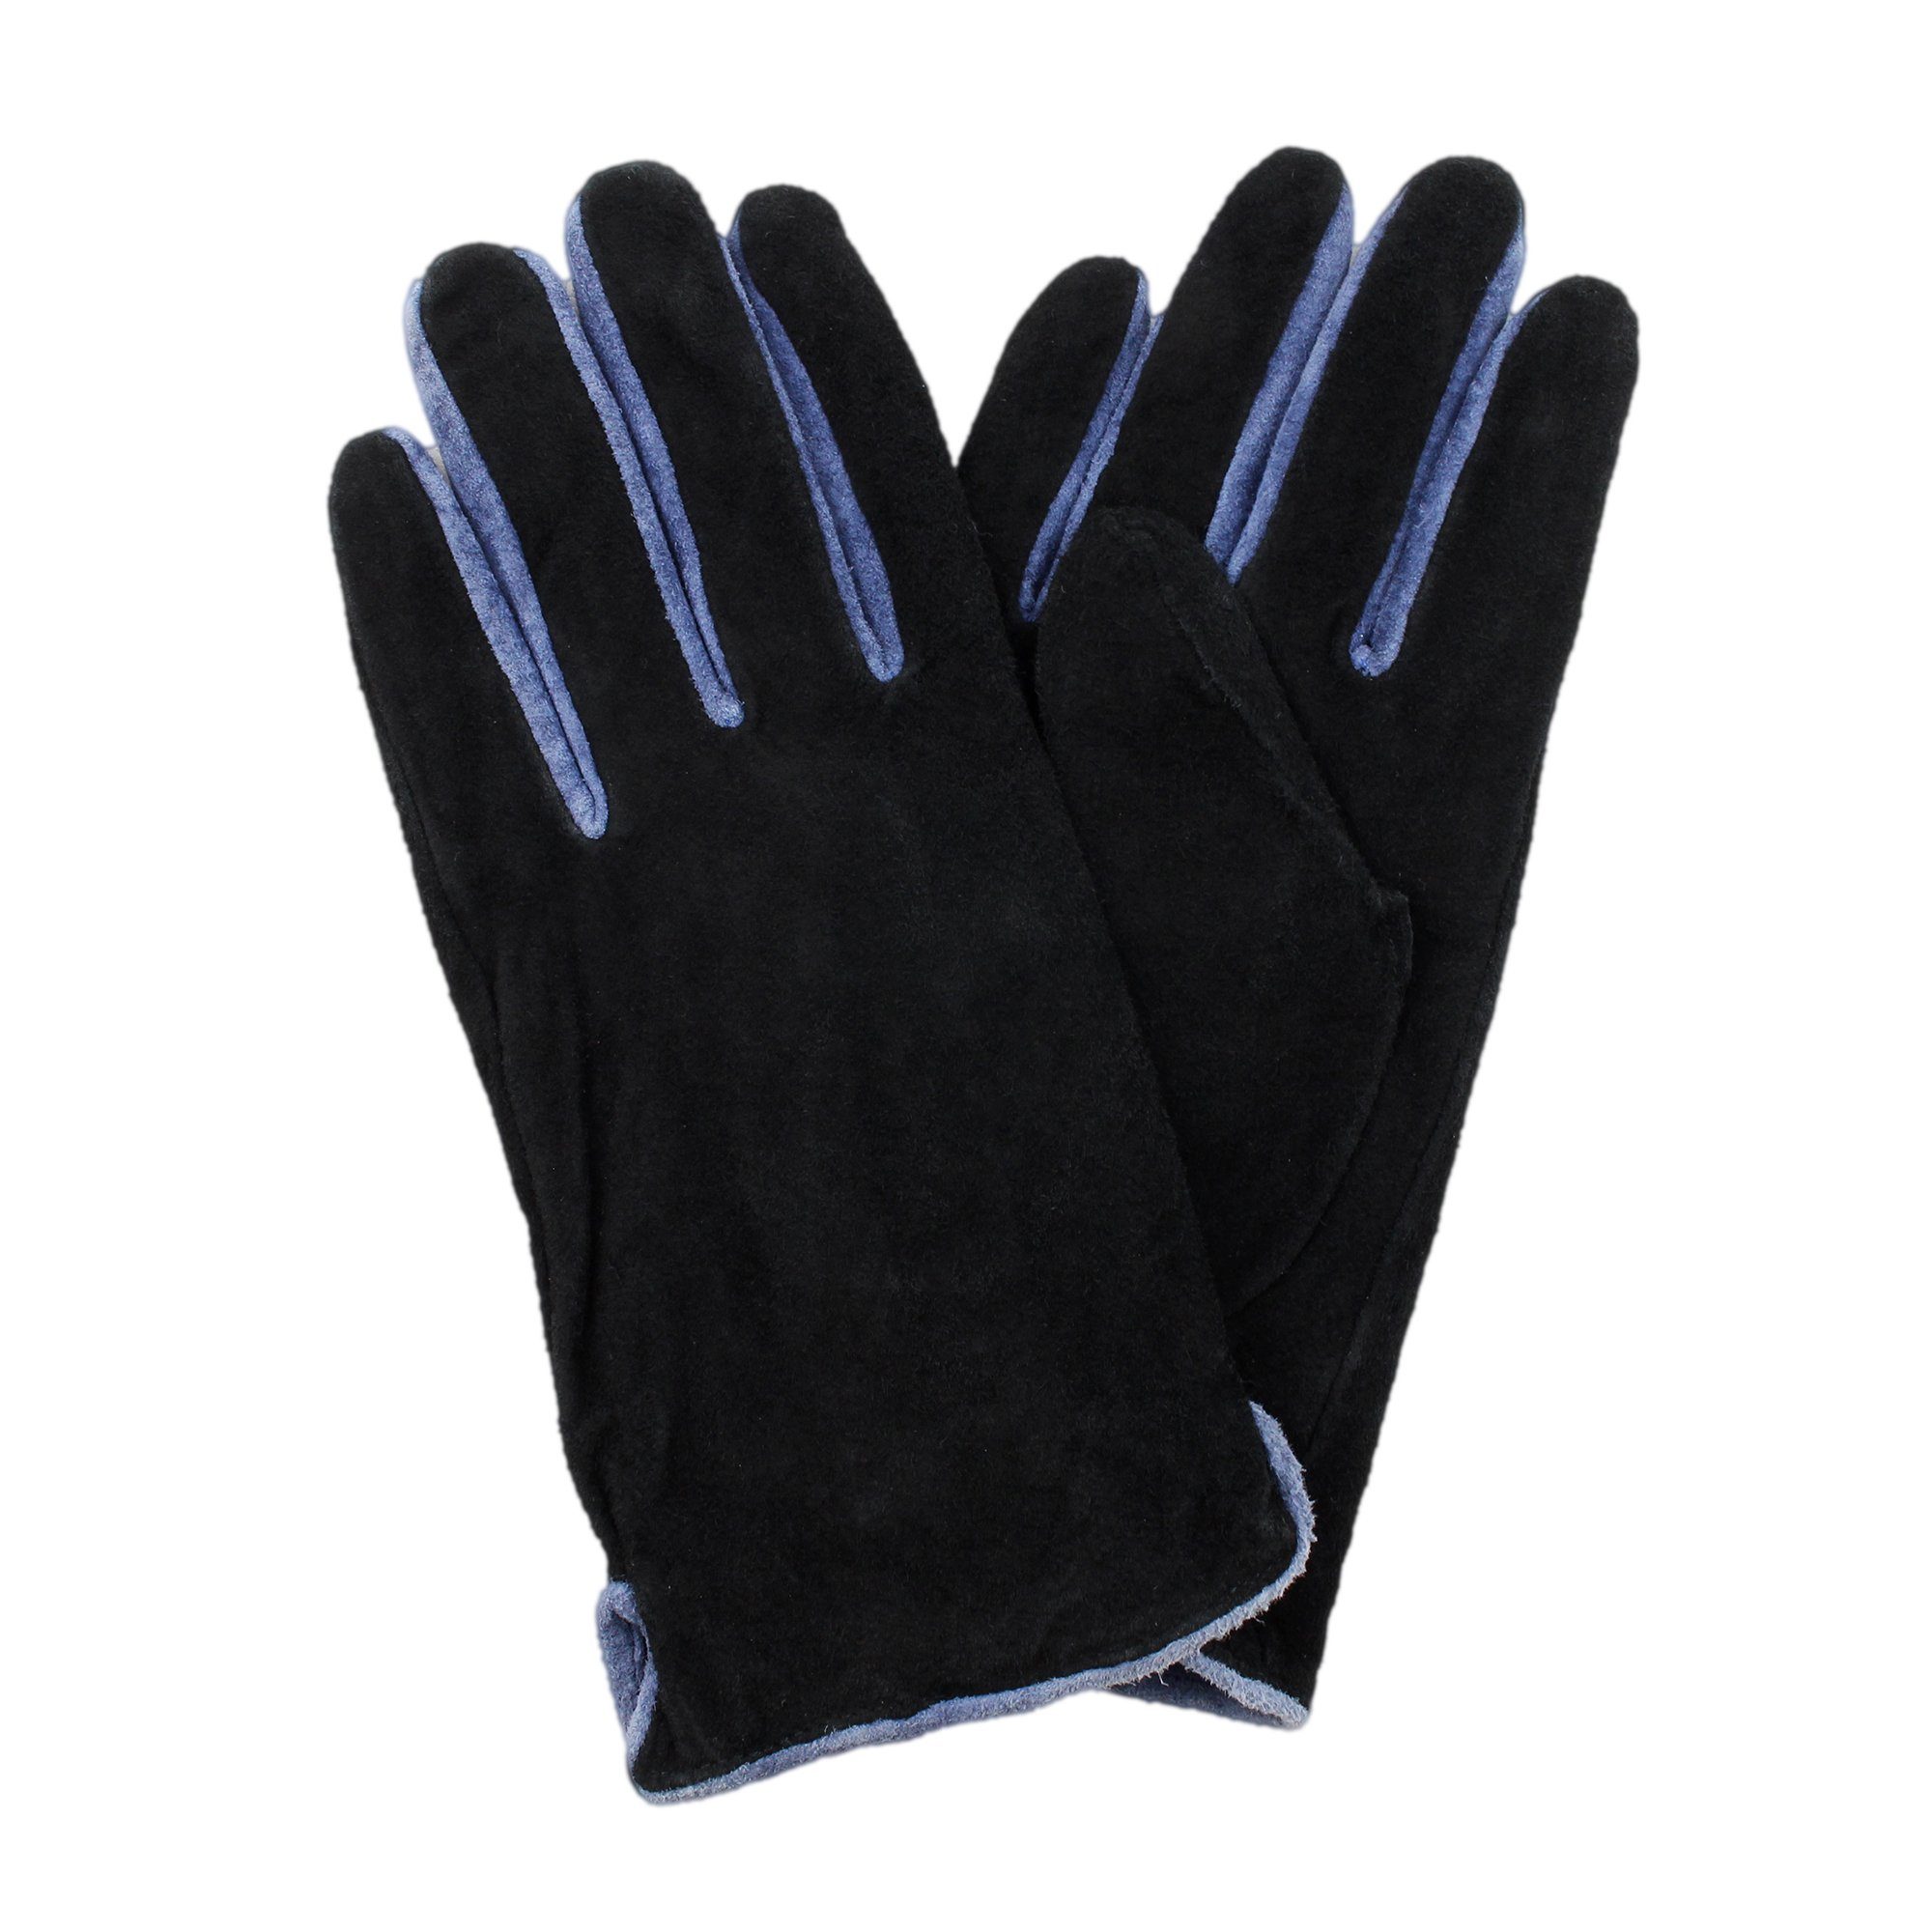 Lederhandschuhe ZEBRO schwarz Velourleder Handschuh